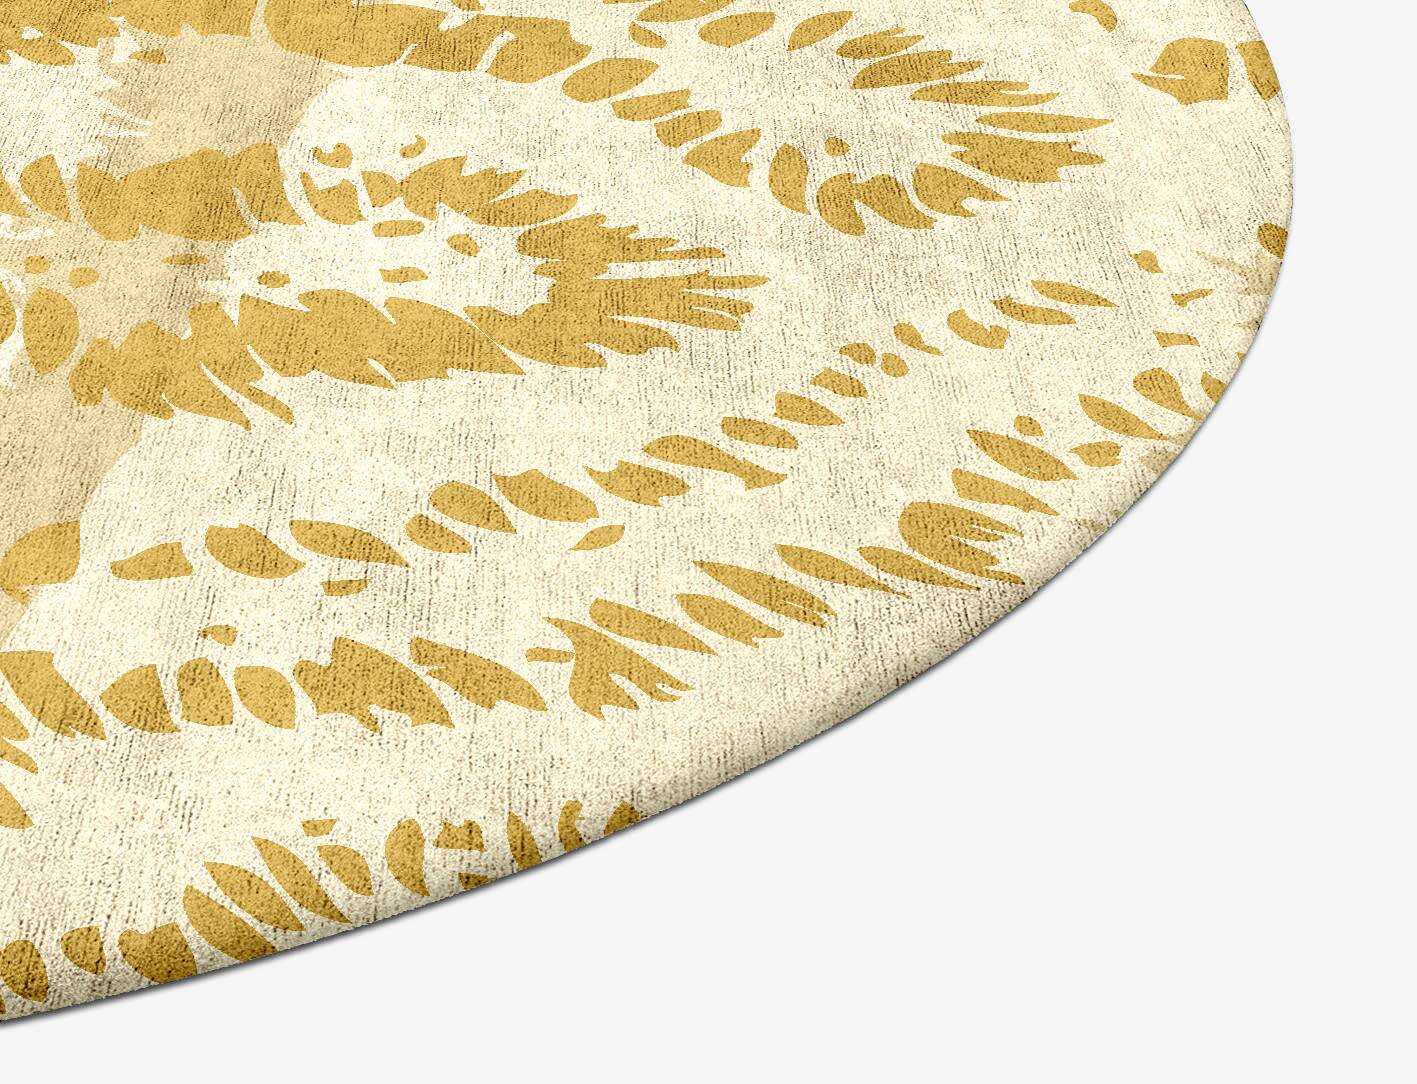 Spor Abstract Oval Hand Tufted Bamboo Silk Custom Rug by Rug Artisan